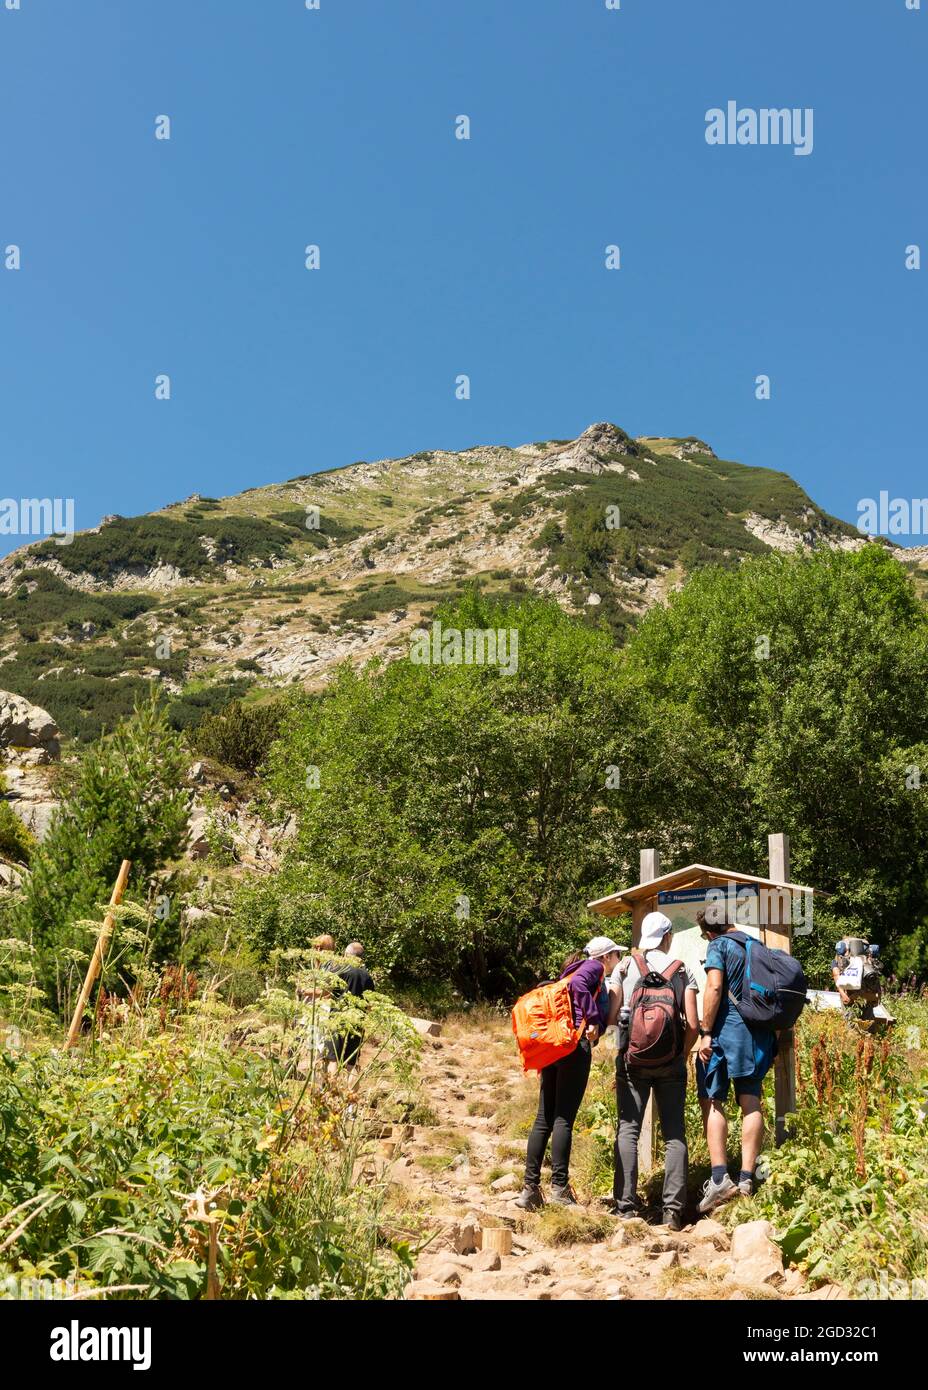 Randonneurs explorant la carte des itinéraires de randonnée au pied du pic de Vihren dans le parc national et réserve de Pirin, montagne de Pirin, Bulgarie, Balkans, Europe Banque D'Images